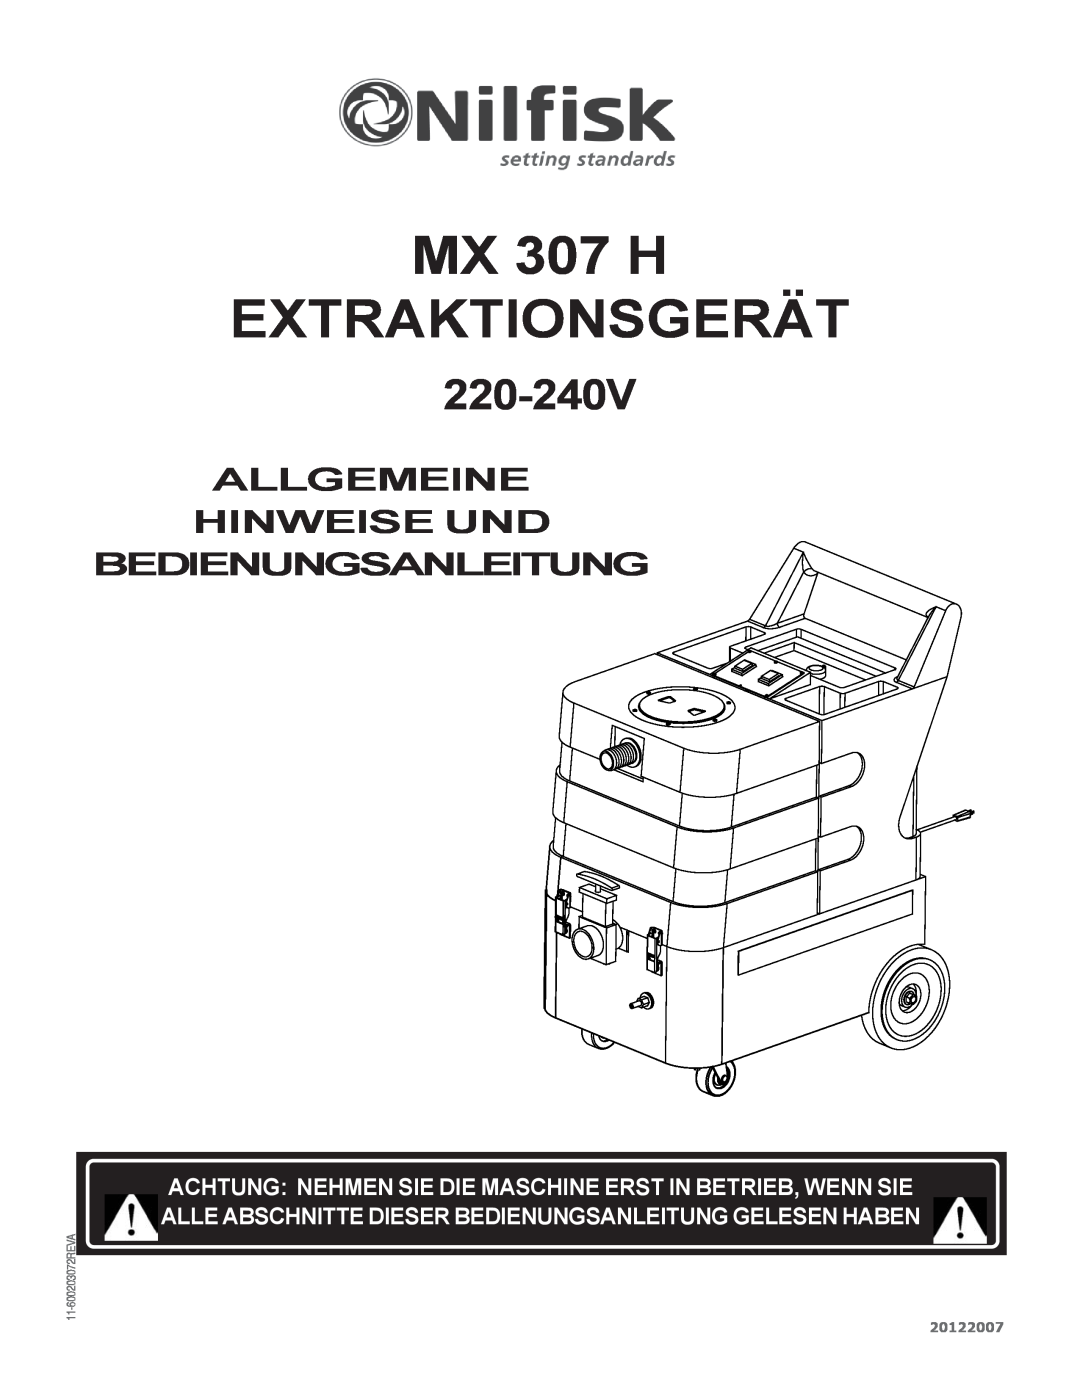 Nilfisk-Advance America MX 307 H EXTRAKTIONSGERÄT, Allgemeine Hinweise Und Bedienungsanleitung, 220-240V, 20122007 